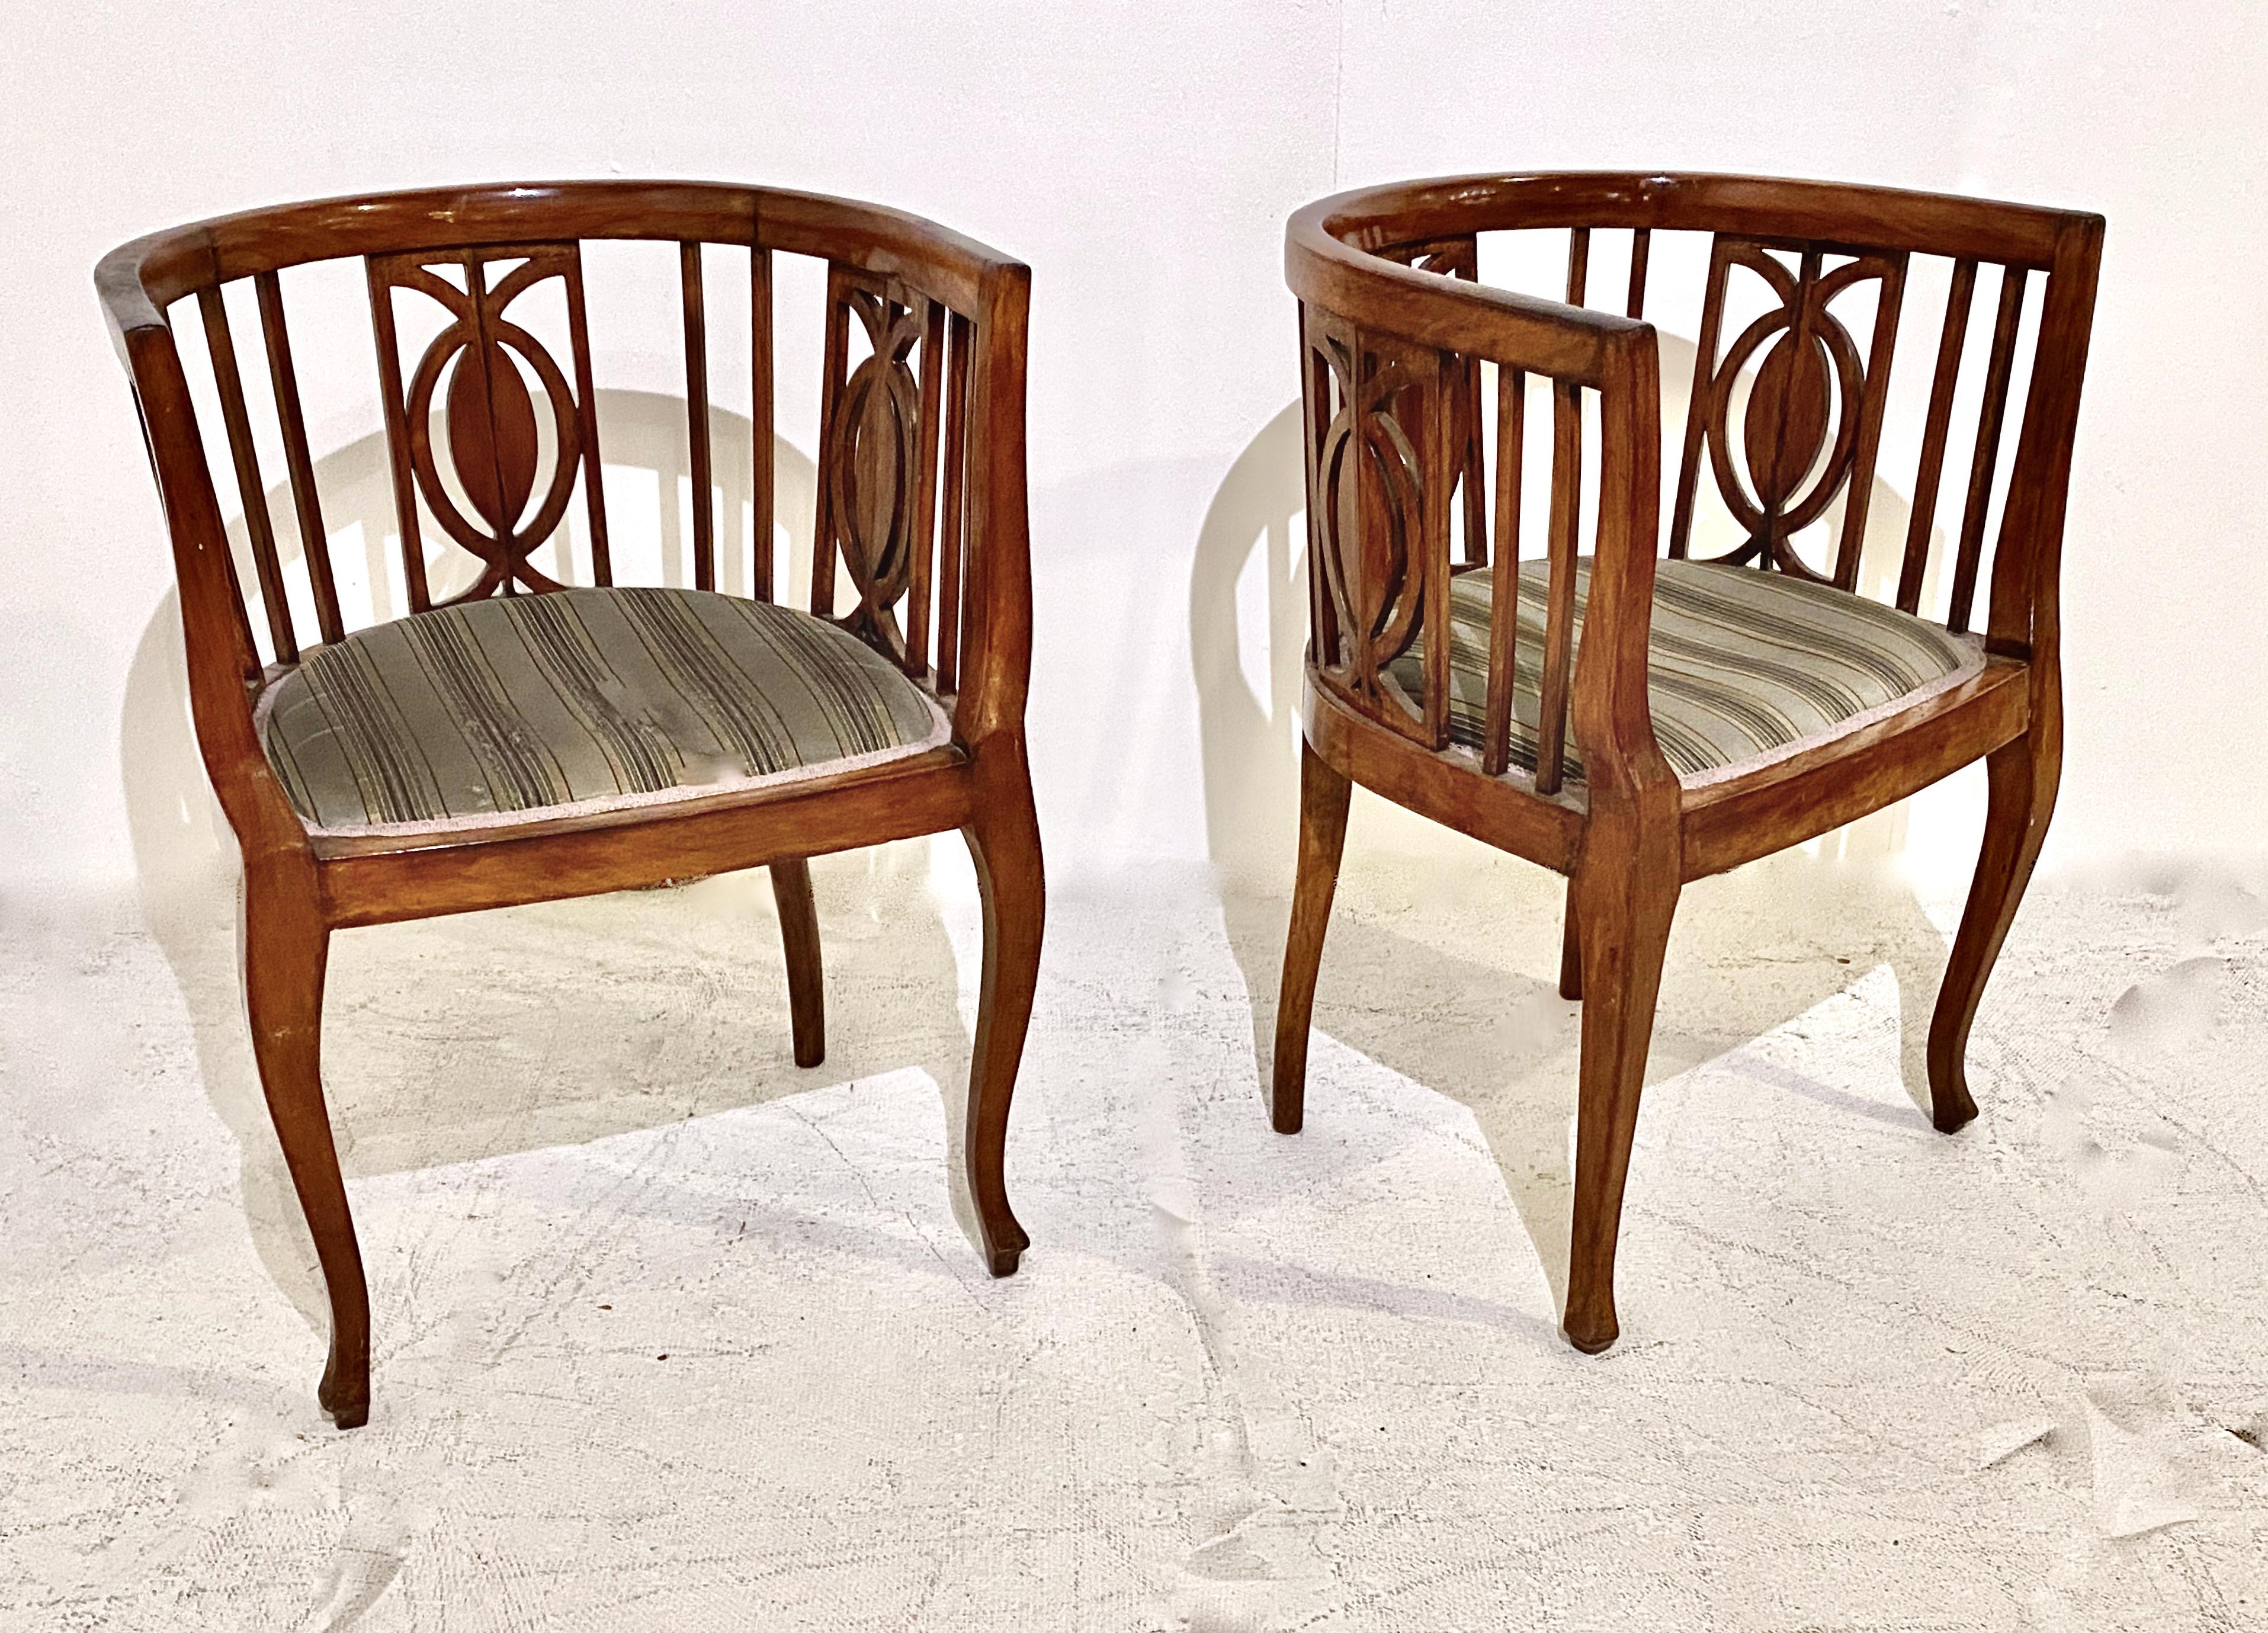 Il s'agit d'une forme inhabituelle de chaises Biedermeier à dossier en forme de tonneau, en noyer. Le dos du tonneau est configuré en barres ouvertes avec trois profils de silhouettes abstraites d'ananas* espacées entre les barres. La forme